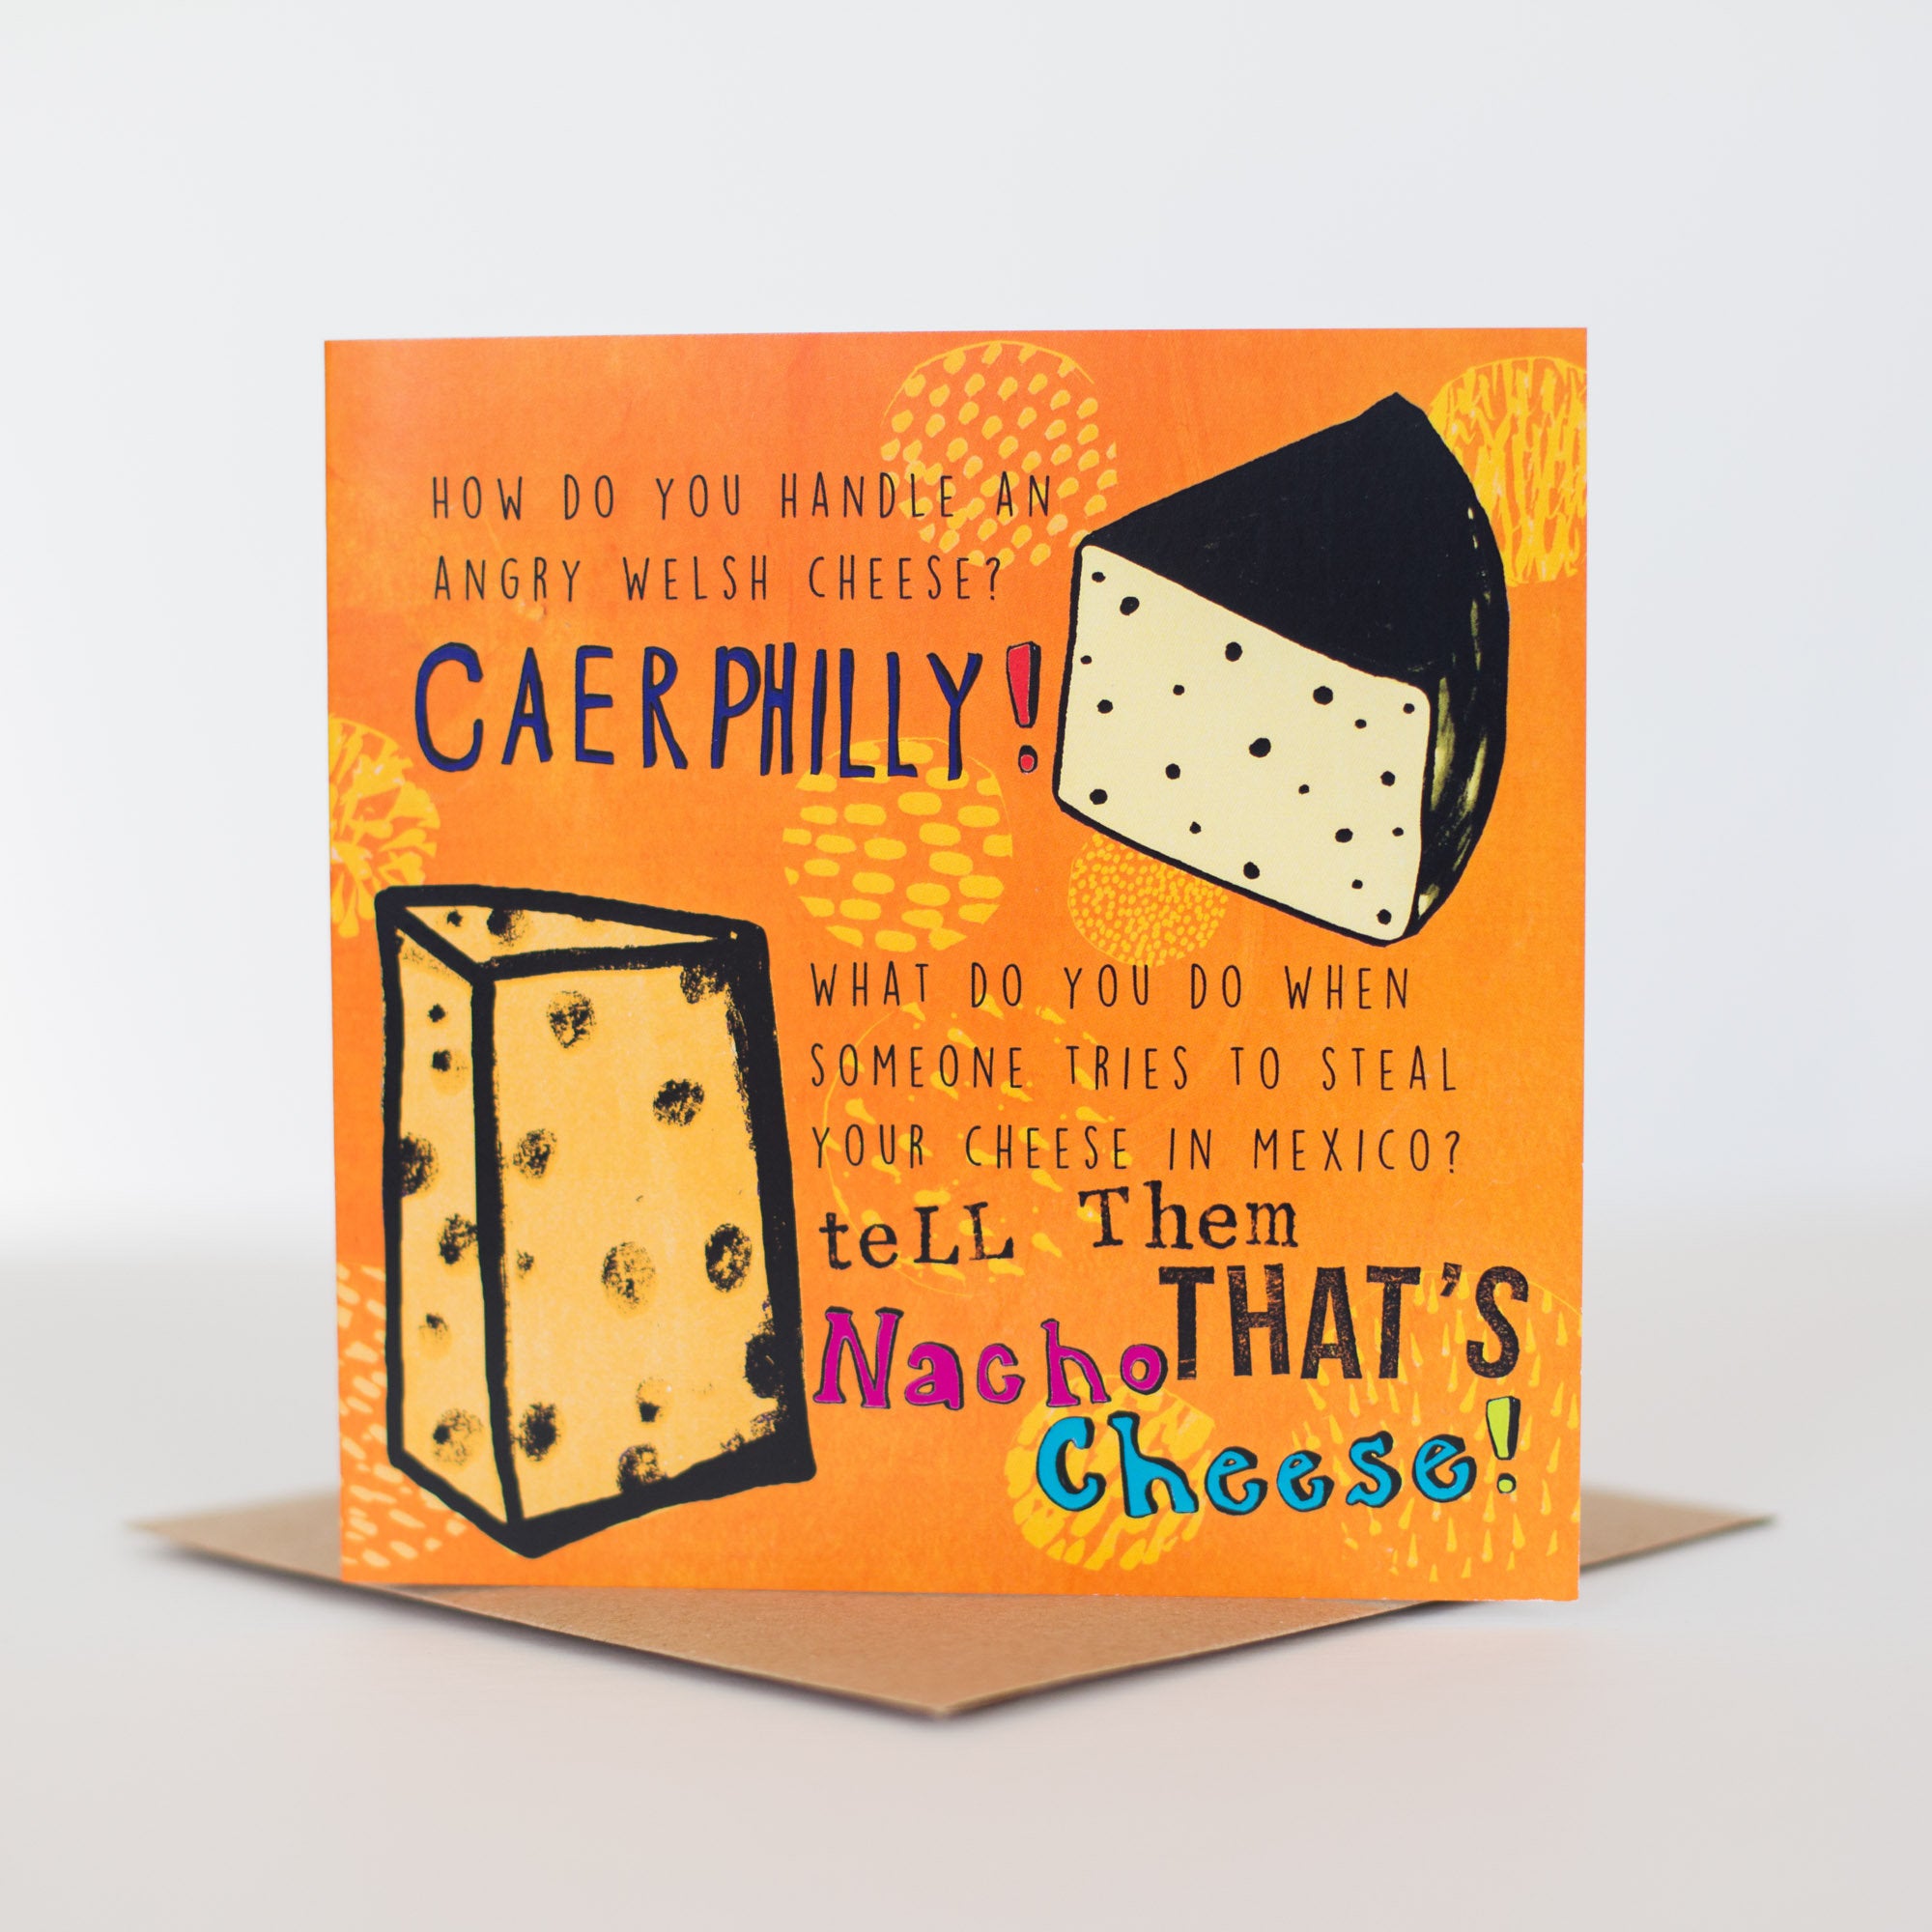 4 Cheese Joke Greetings Cards